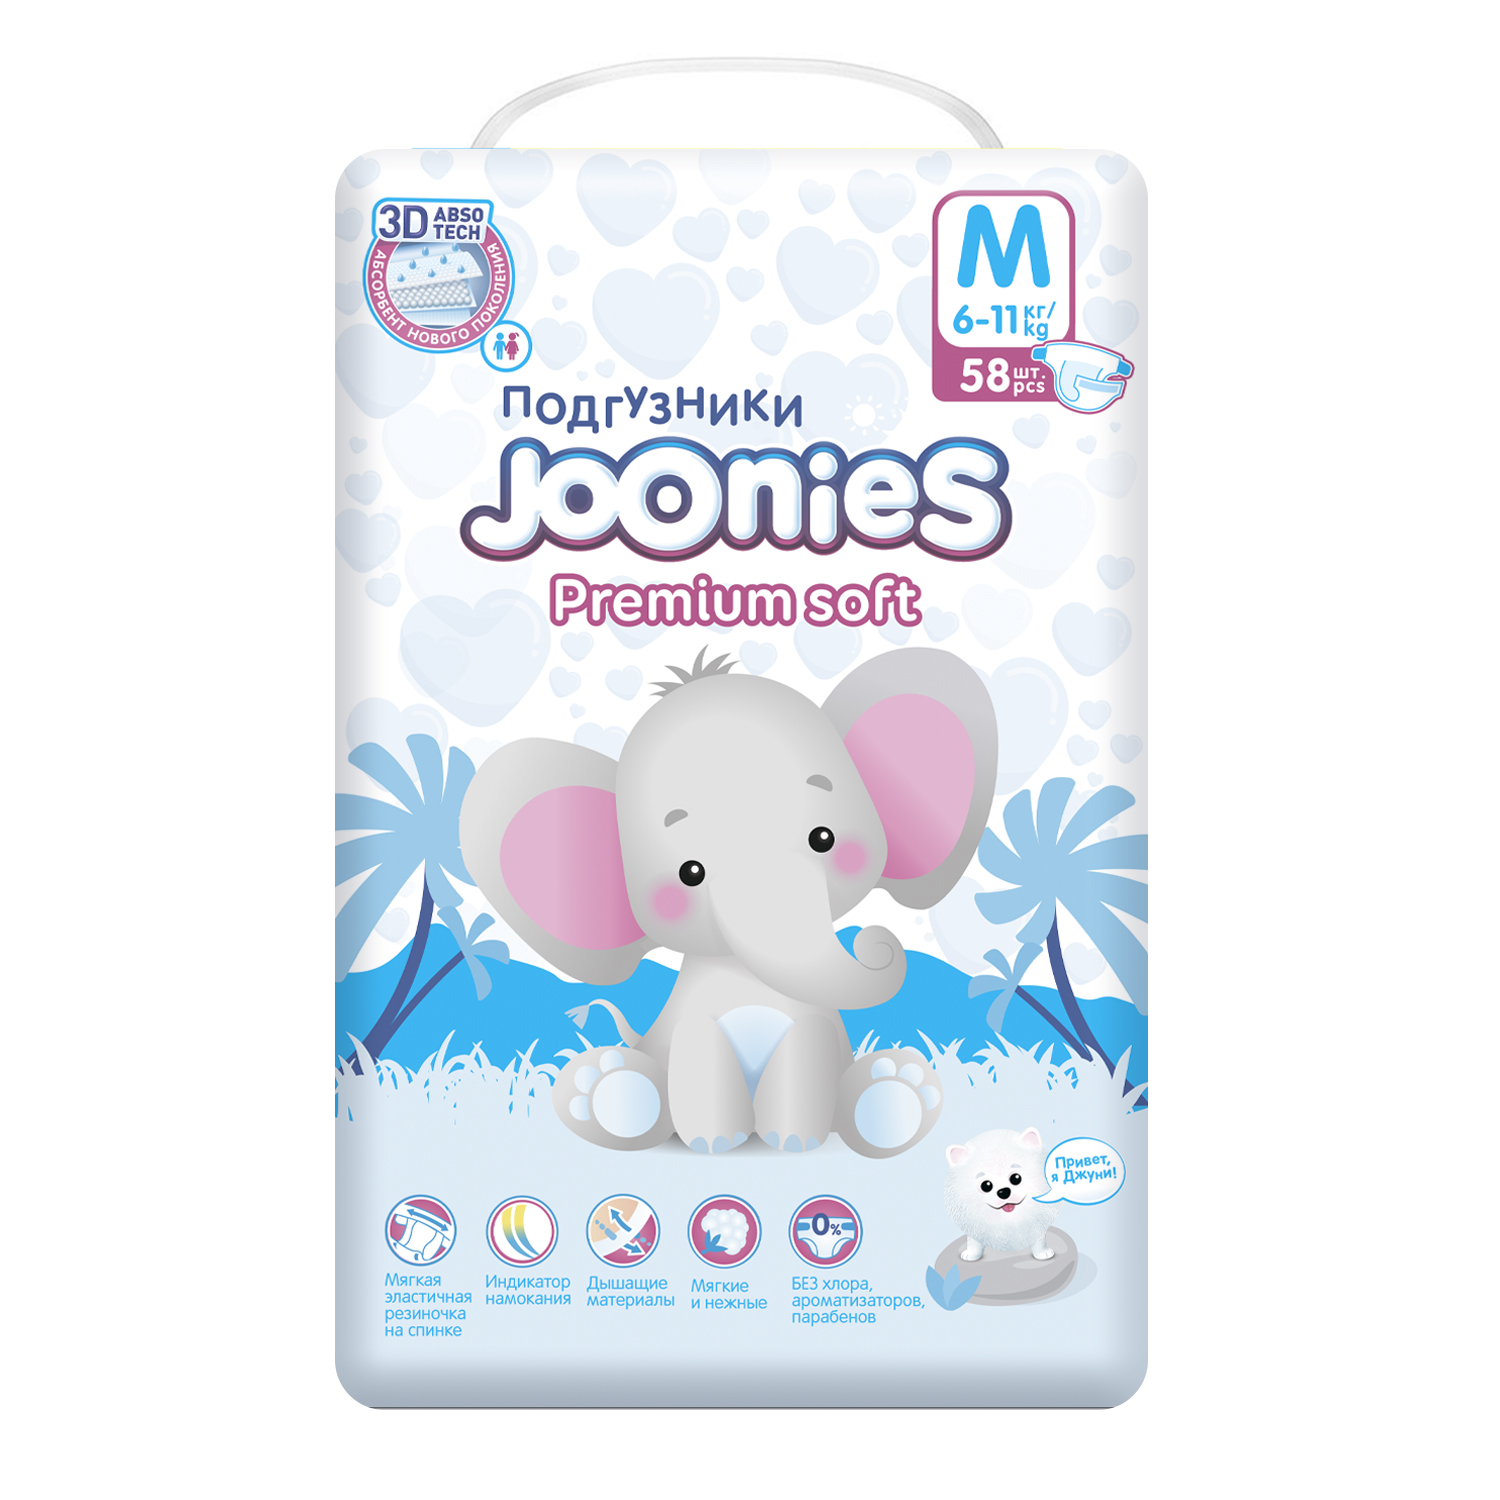 Подгузники m купить. Подгузники Joonies Premium. Подгузники Joonies Premium Soft m 6-11 кг 58 шт. Джунис подгузники премиум софт м.